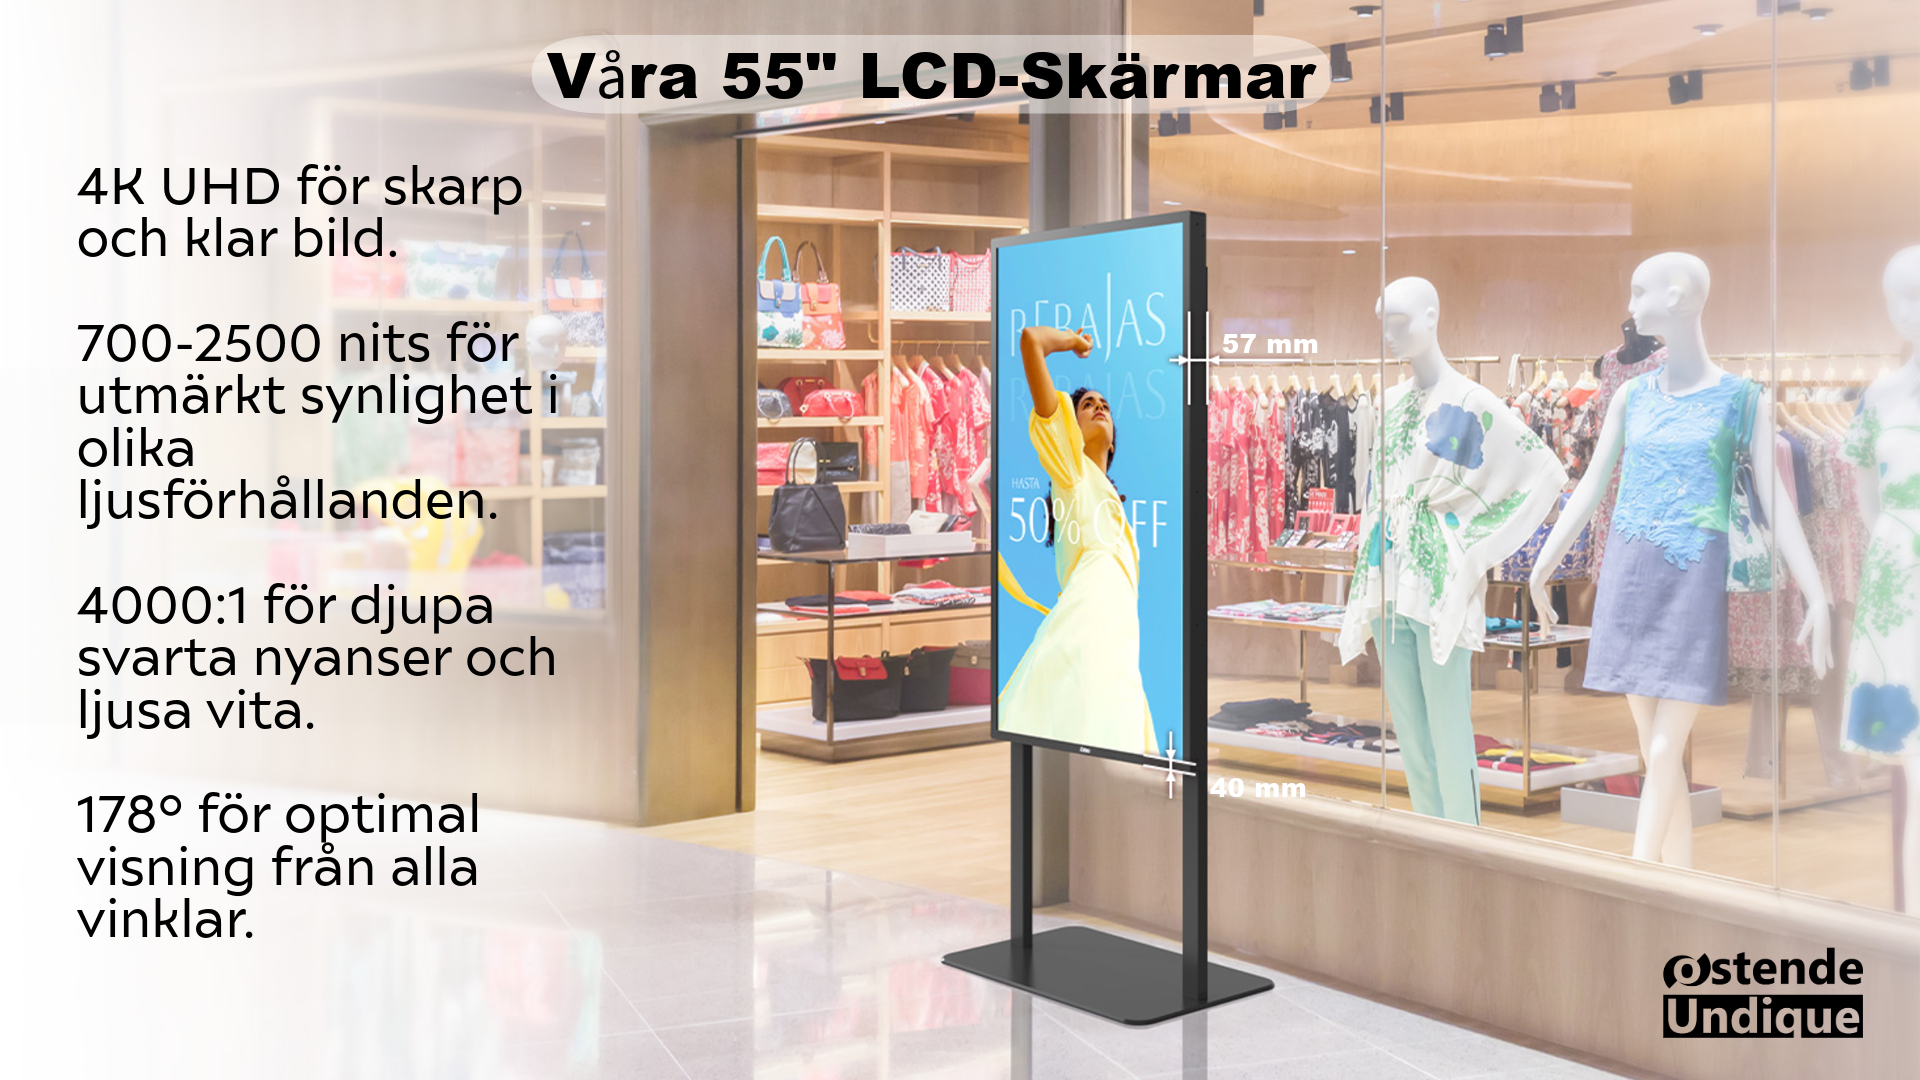 55" LCD-skärm i butiksmiljö med produktinformation